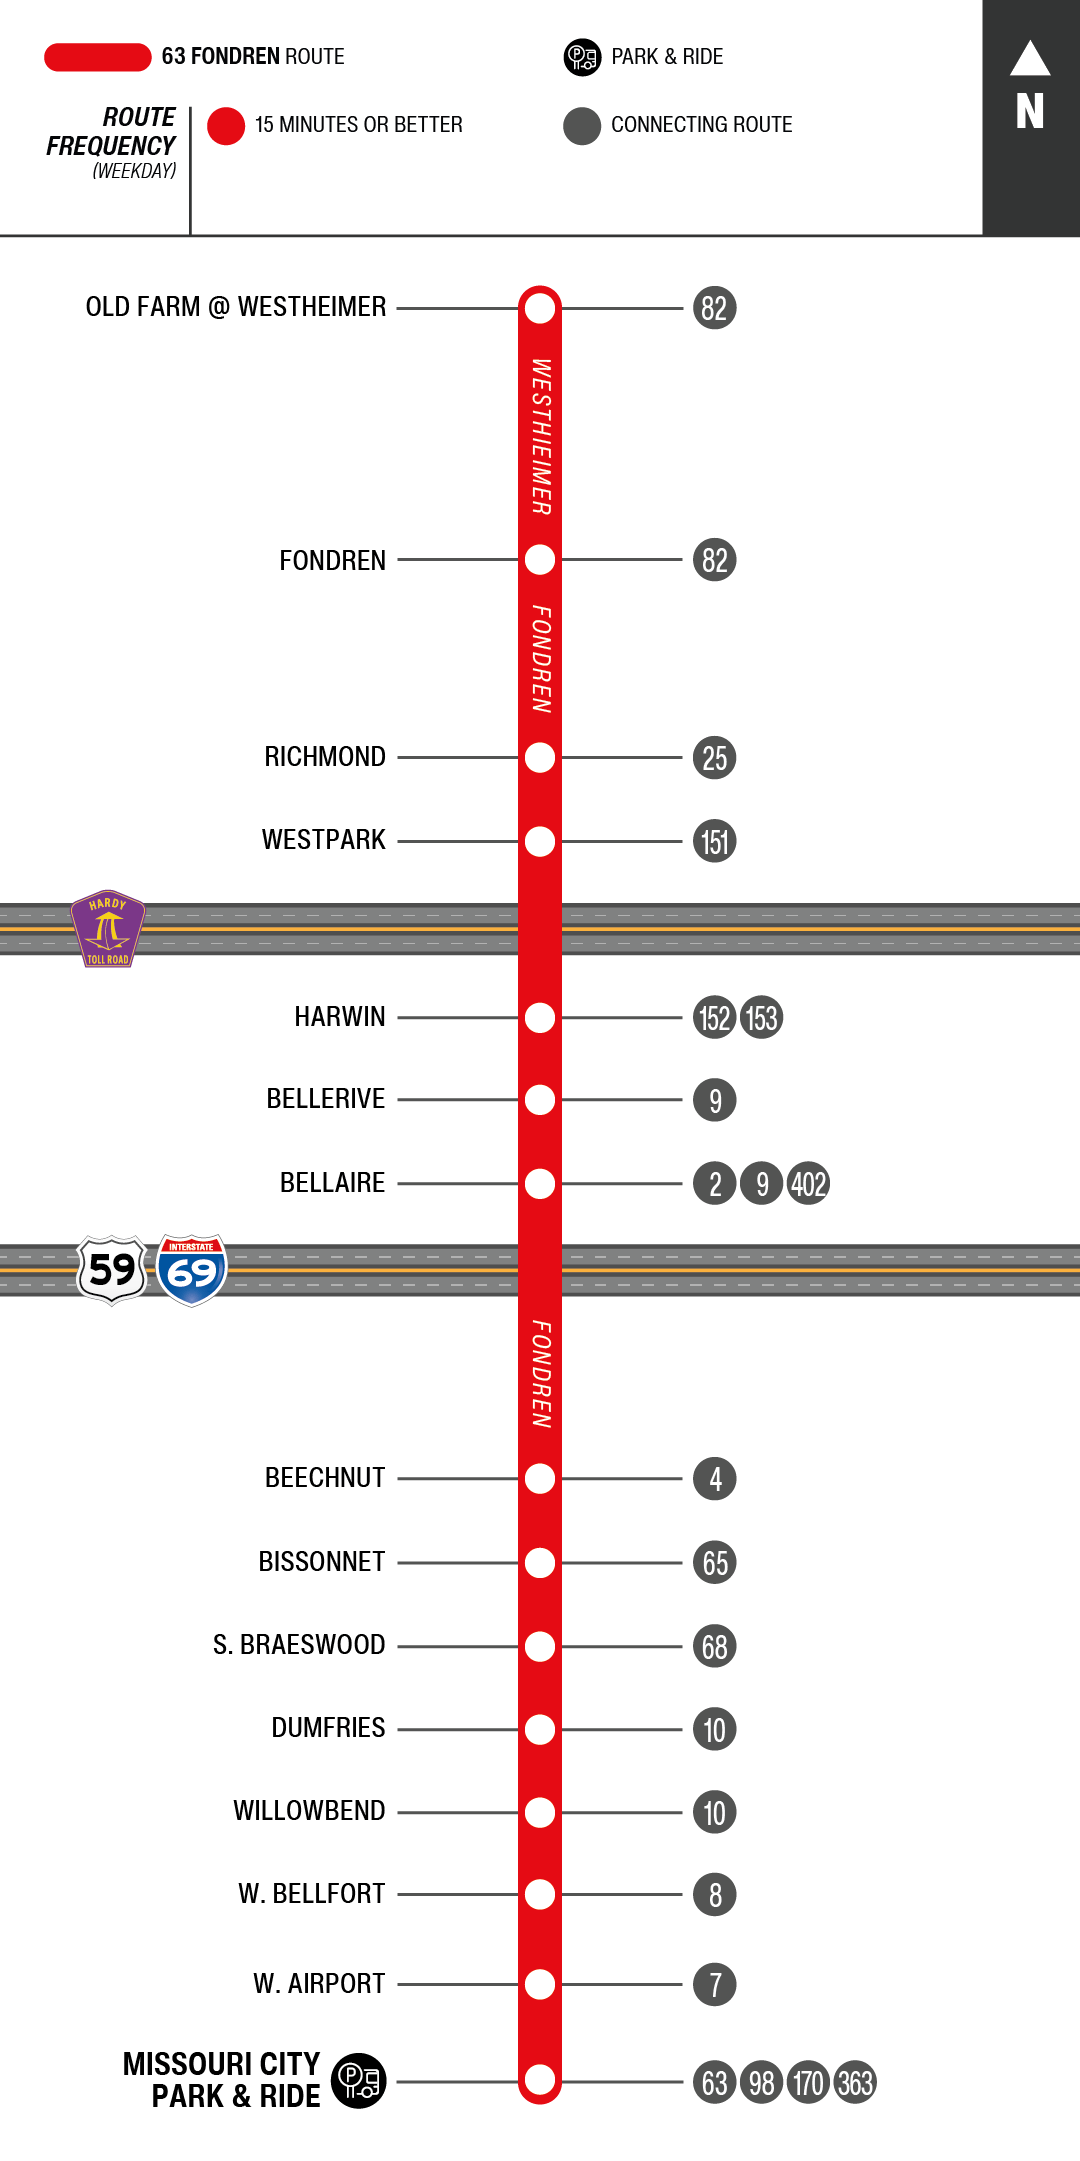 Route map for 63 Fondren bus